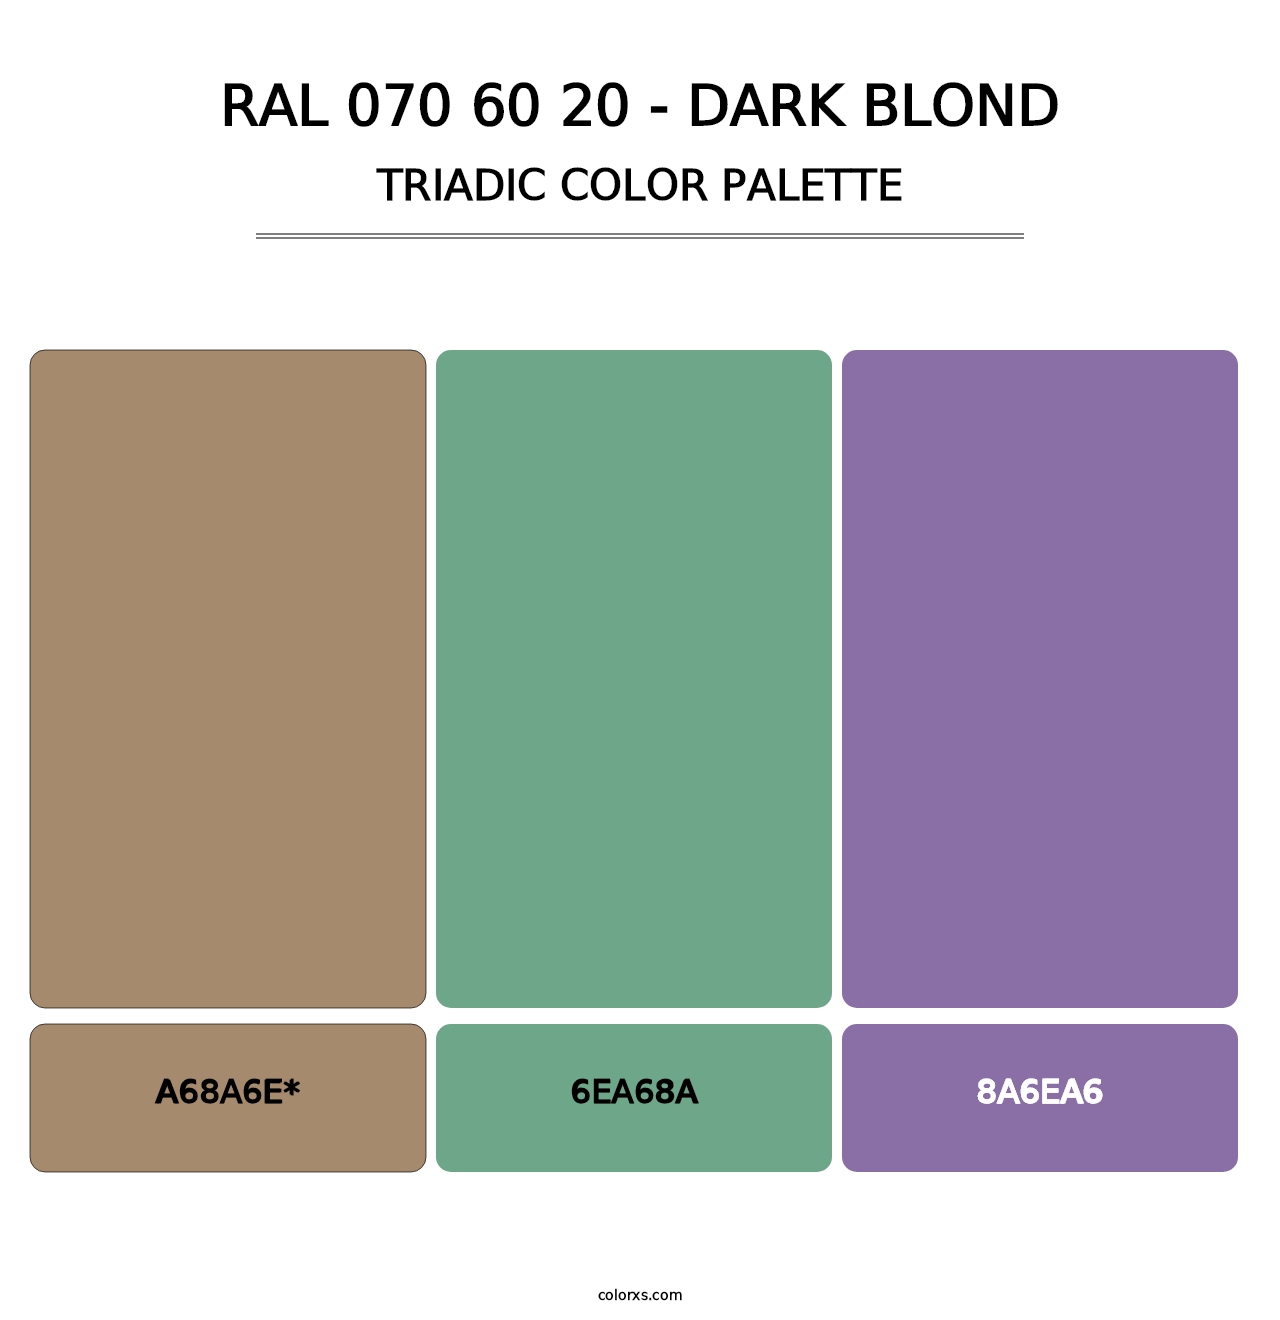 RAL 070 60 20 - Dark Blond - Triadic Color Palette